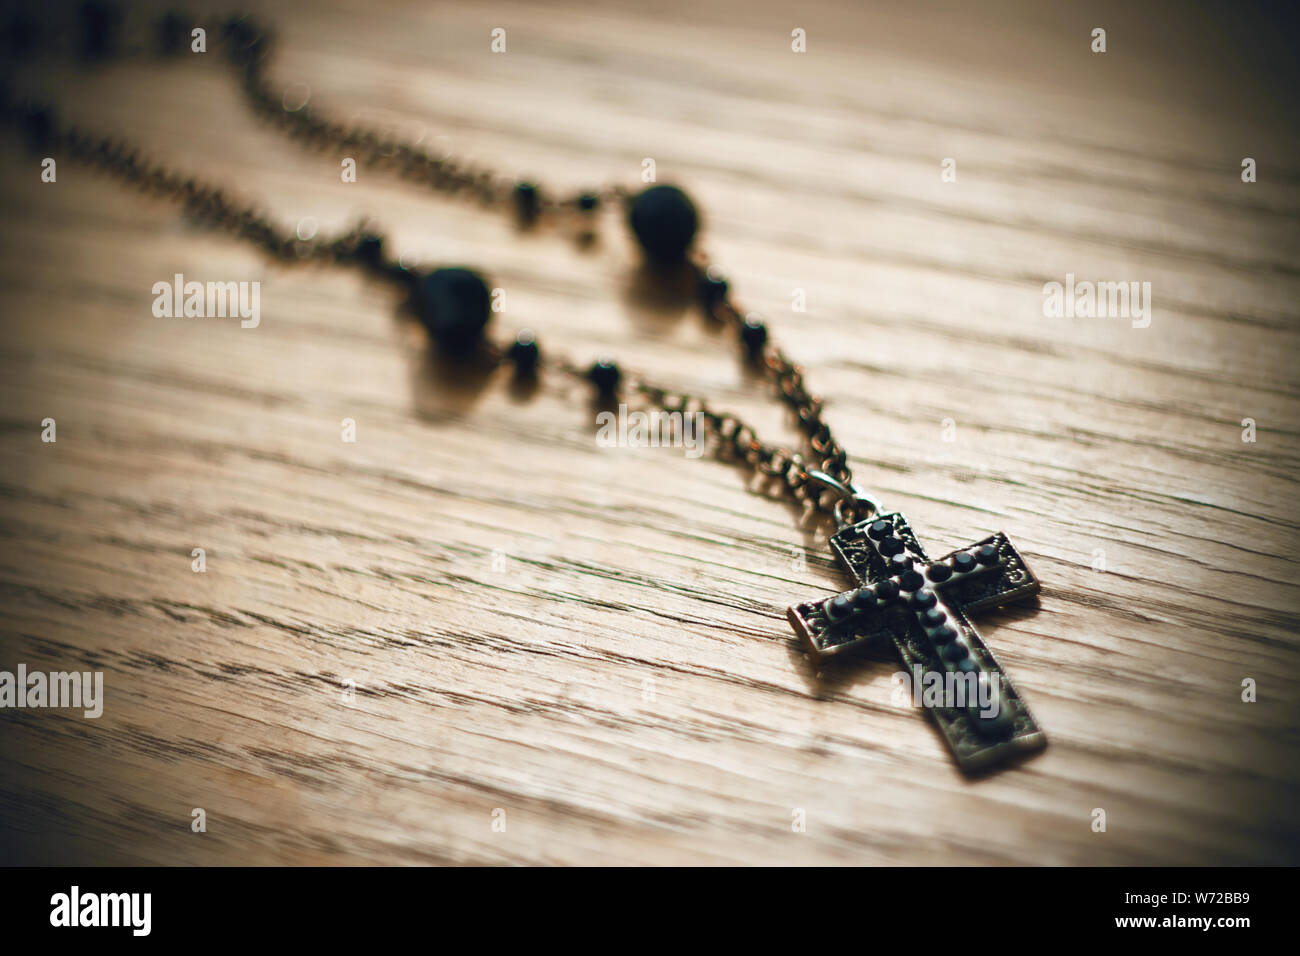 Metal Gothic Black Cross mit schwarzen Perlen auf der Kette liegt auf dem alten Holz- Oberfläche, durch Licht beleuchtet. Stockfoto